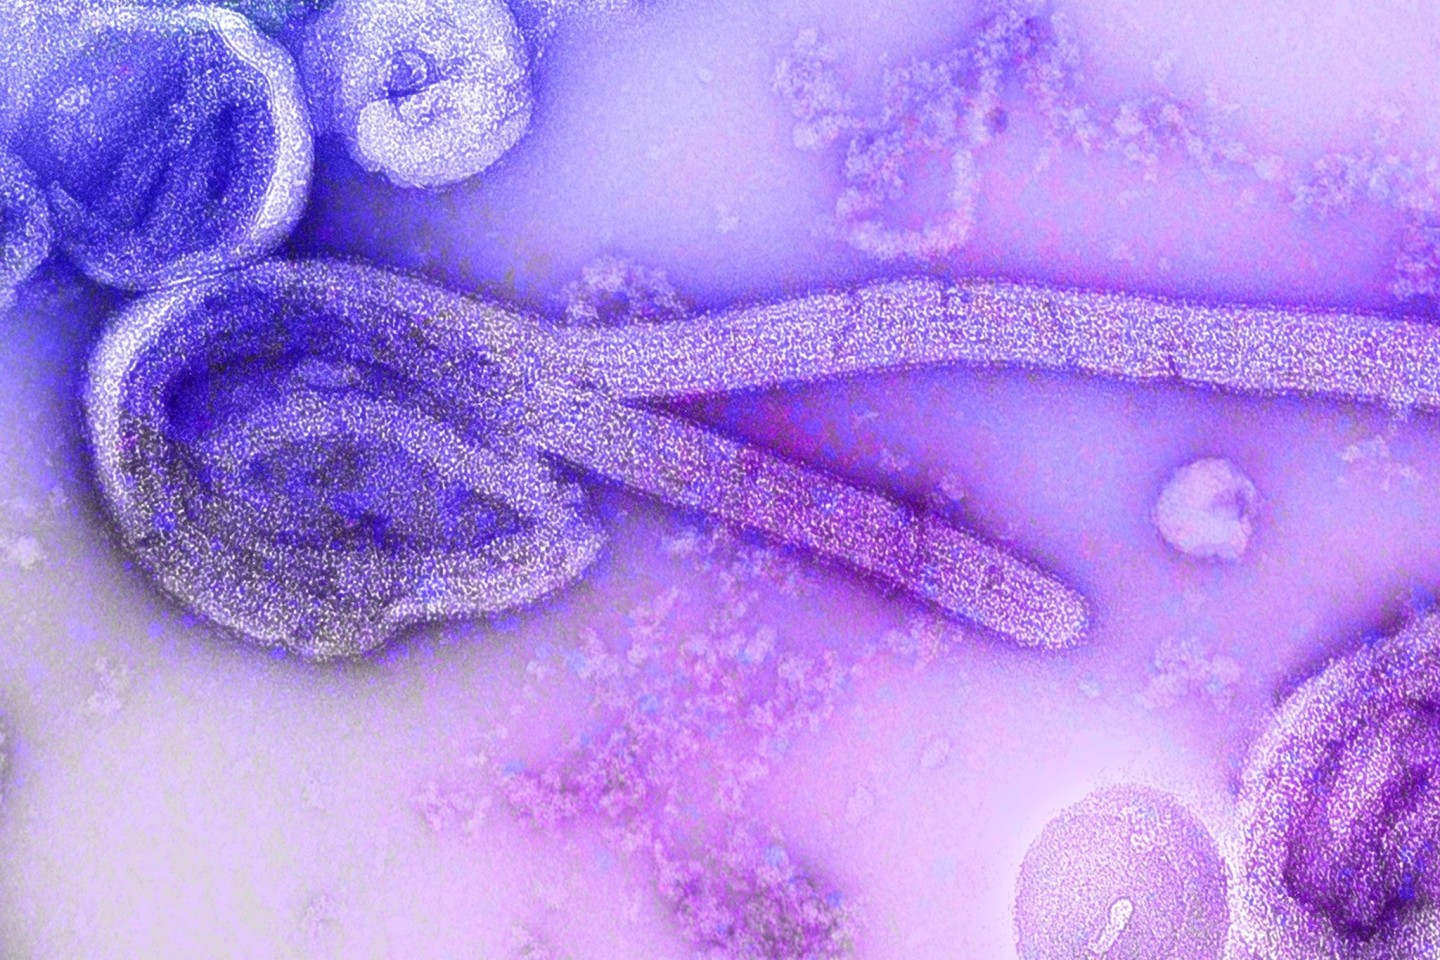 Eine elektronenmikroskopische Aufnahme des Marburgvirus. Im zentralafrikanischen Äquatorialguinea ist der Ausbruch des lebensgefährlichen Marburg-Fiebers bestätigt worden. (Bild von 1968)